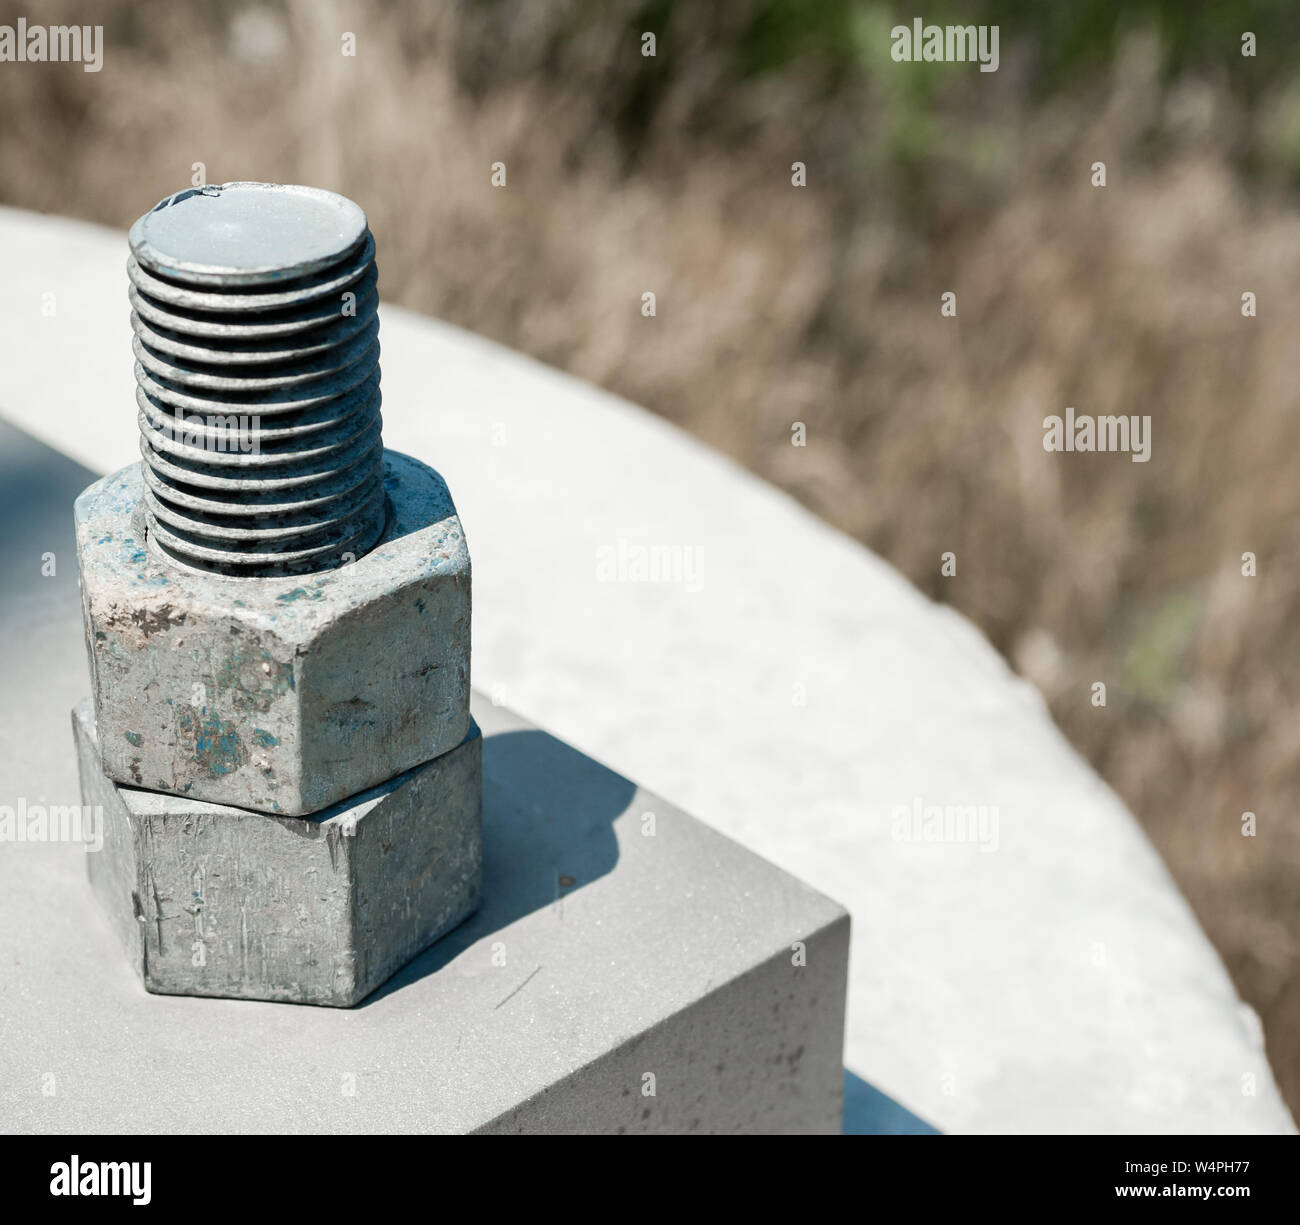 Zwei Sechskantschrauben Muttern mit Gewinde Stahl auf die Schraube zu  konkreten Block befestigt Stockfotografie - Alamy